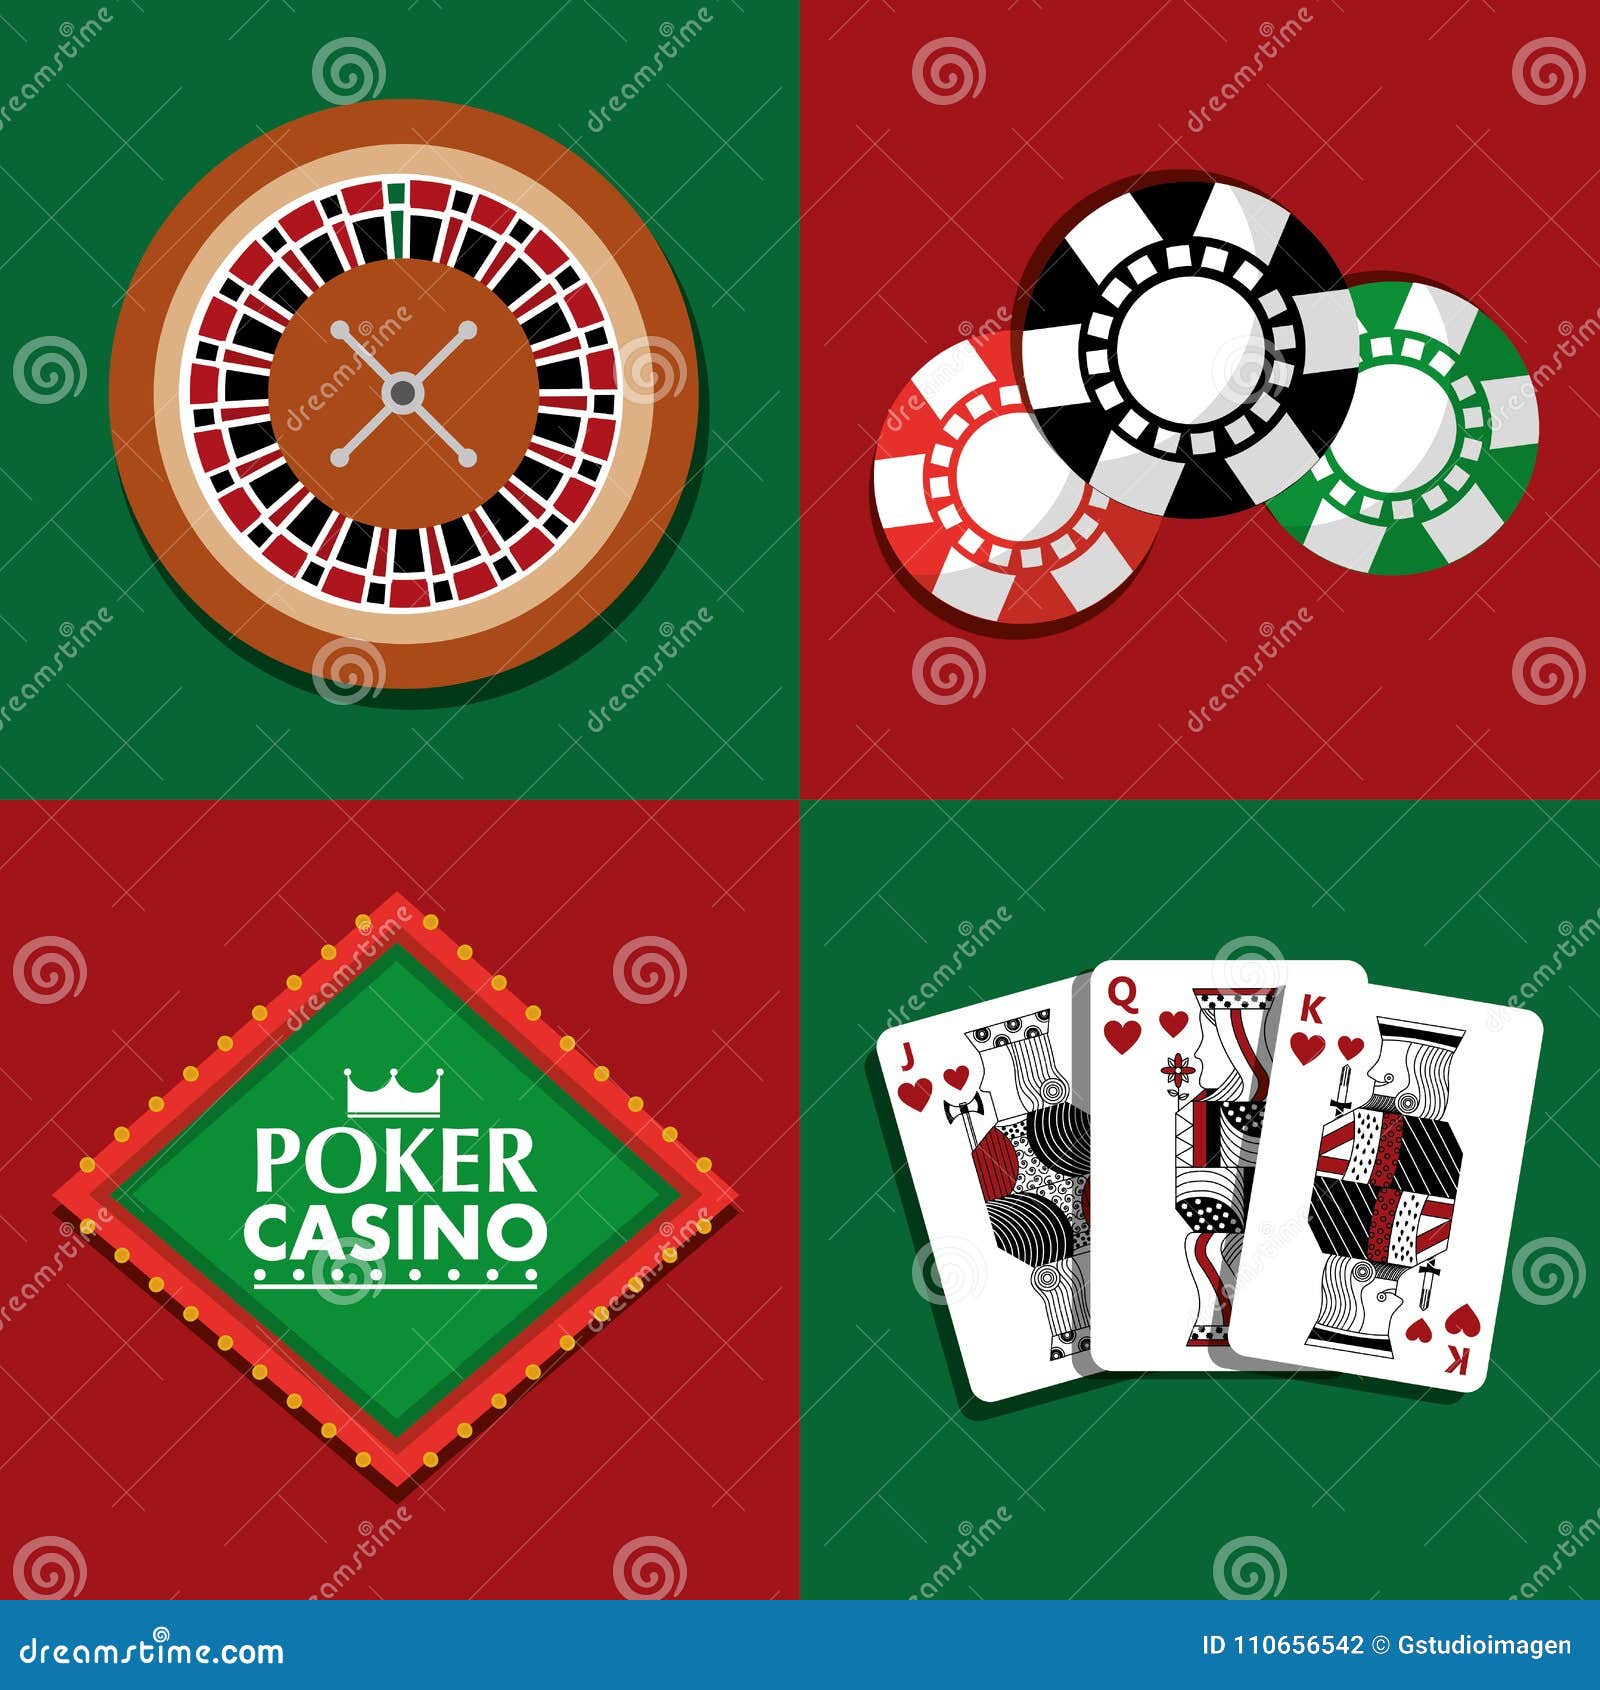 aplicativo poker dinheiro real